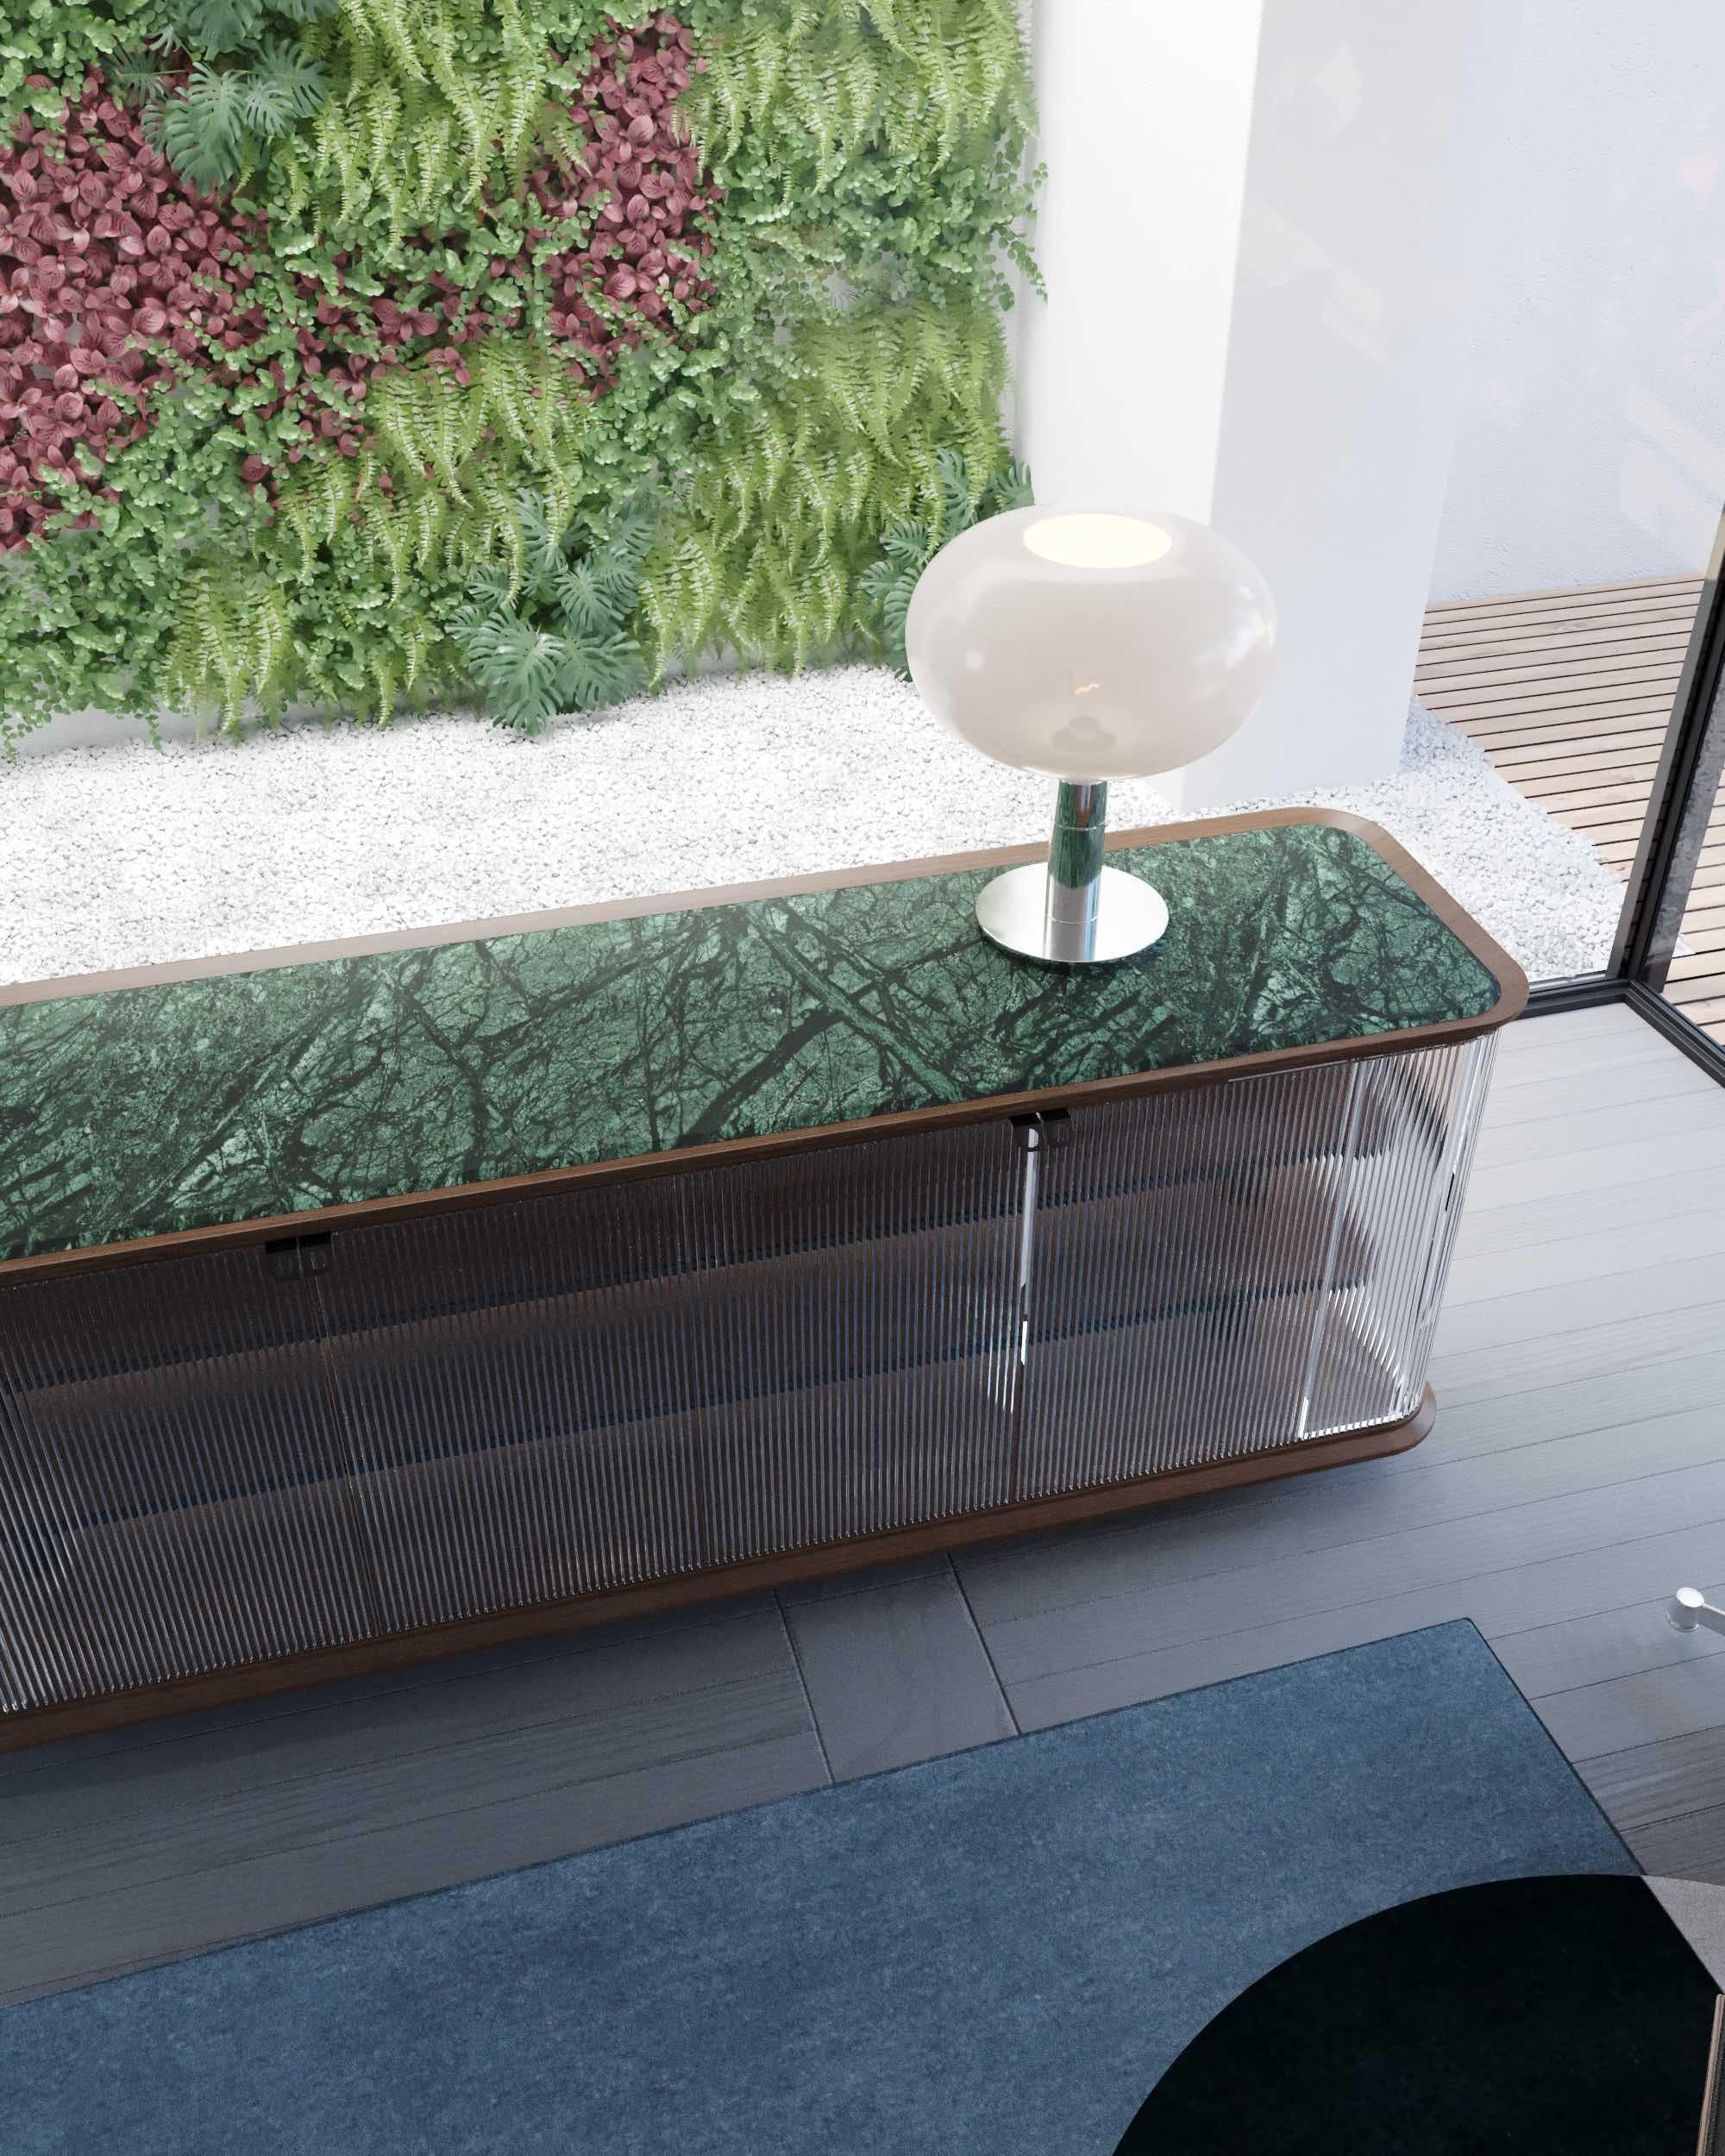 Nemesi #1 ist ein Sideboard, entworfen von SAGARÍA

Die klare Geometrie und die authentische Eloquenz des Materials, das geriffelte Glas in Kombination mit dem goldenen Calacatta-Marmor, sind das eigentliche Merkmal, das die geschwungenen,